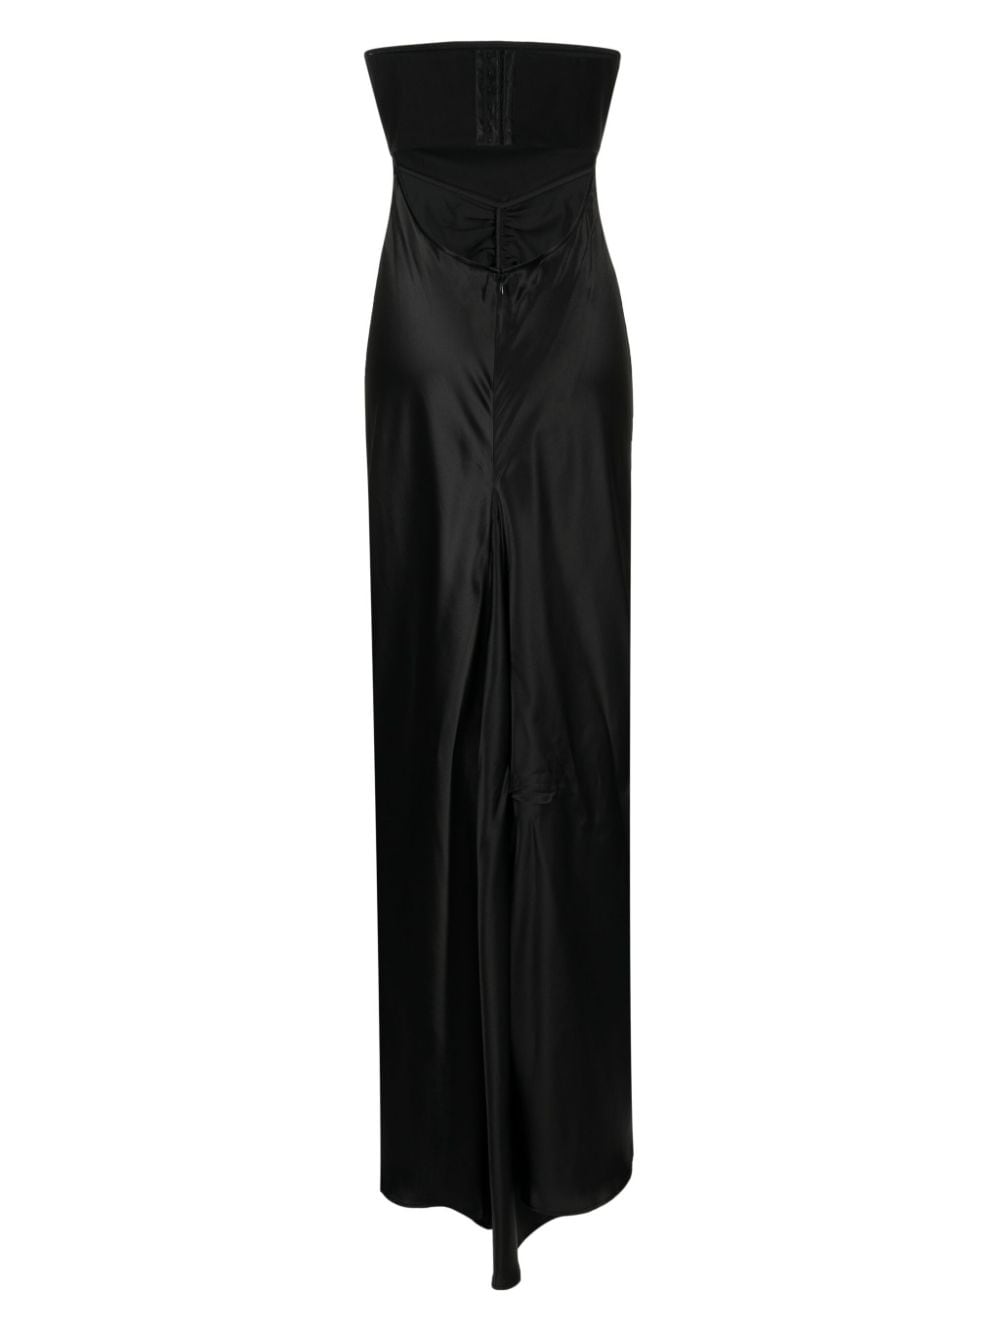 STAUD Strapless jurk - Zwart